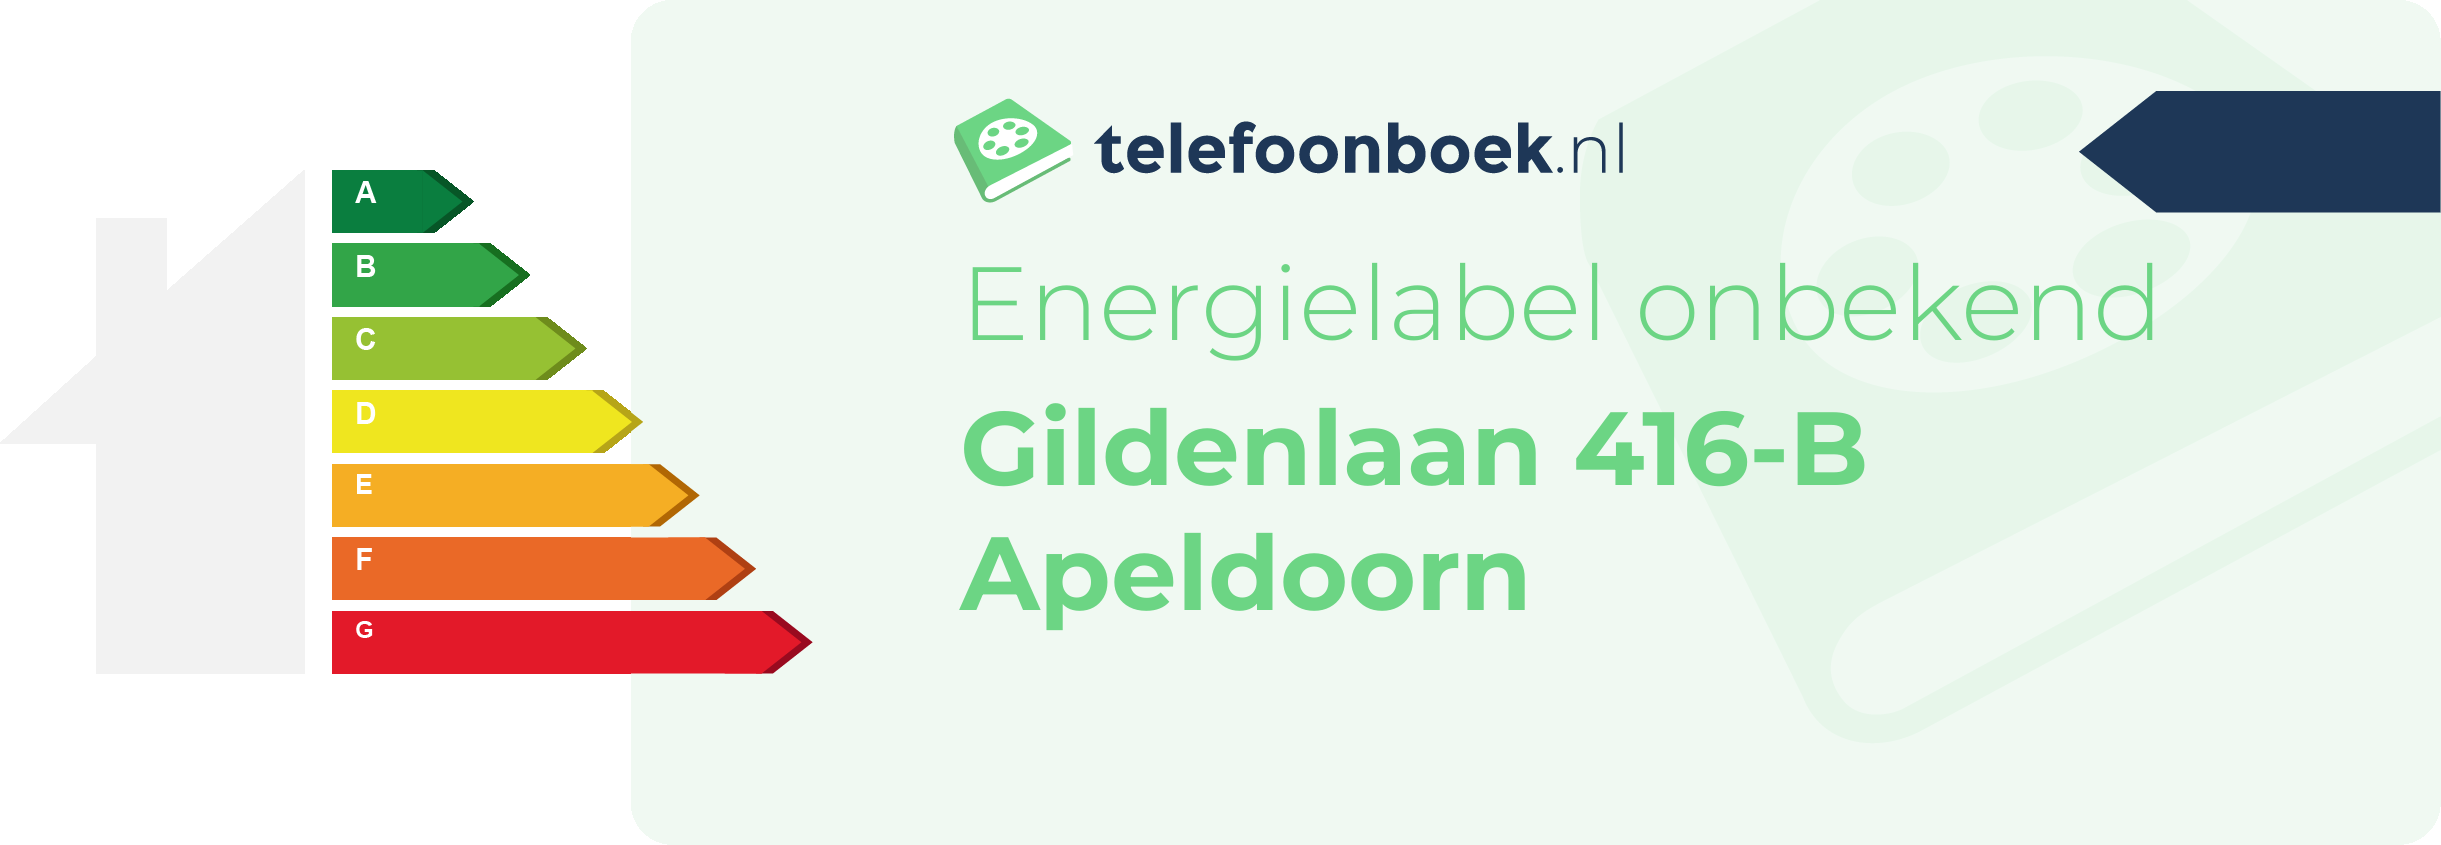 Energielabel Gildenlaan 416-B Apeldoorn